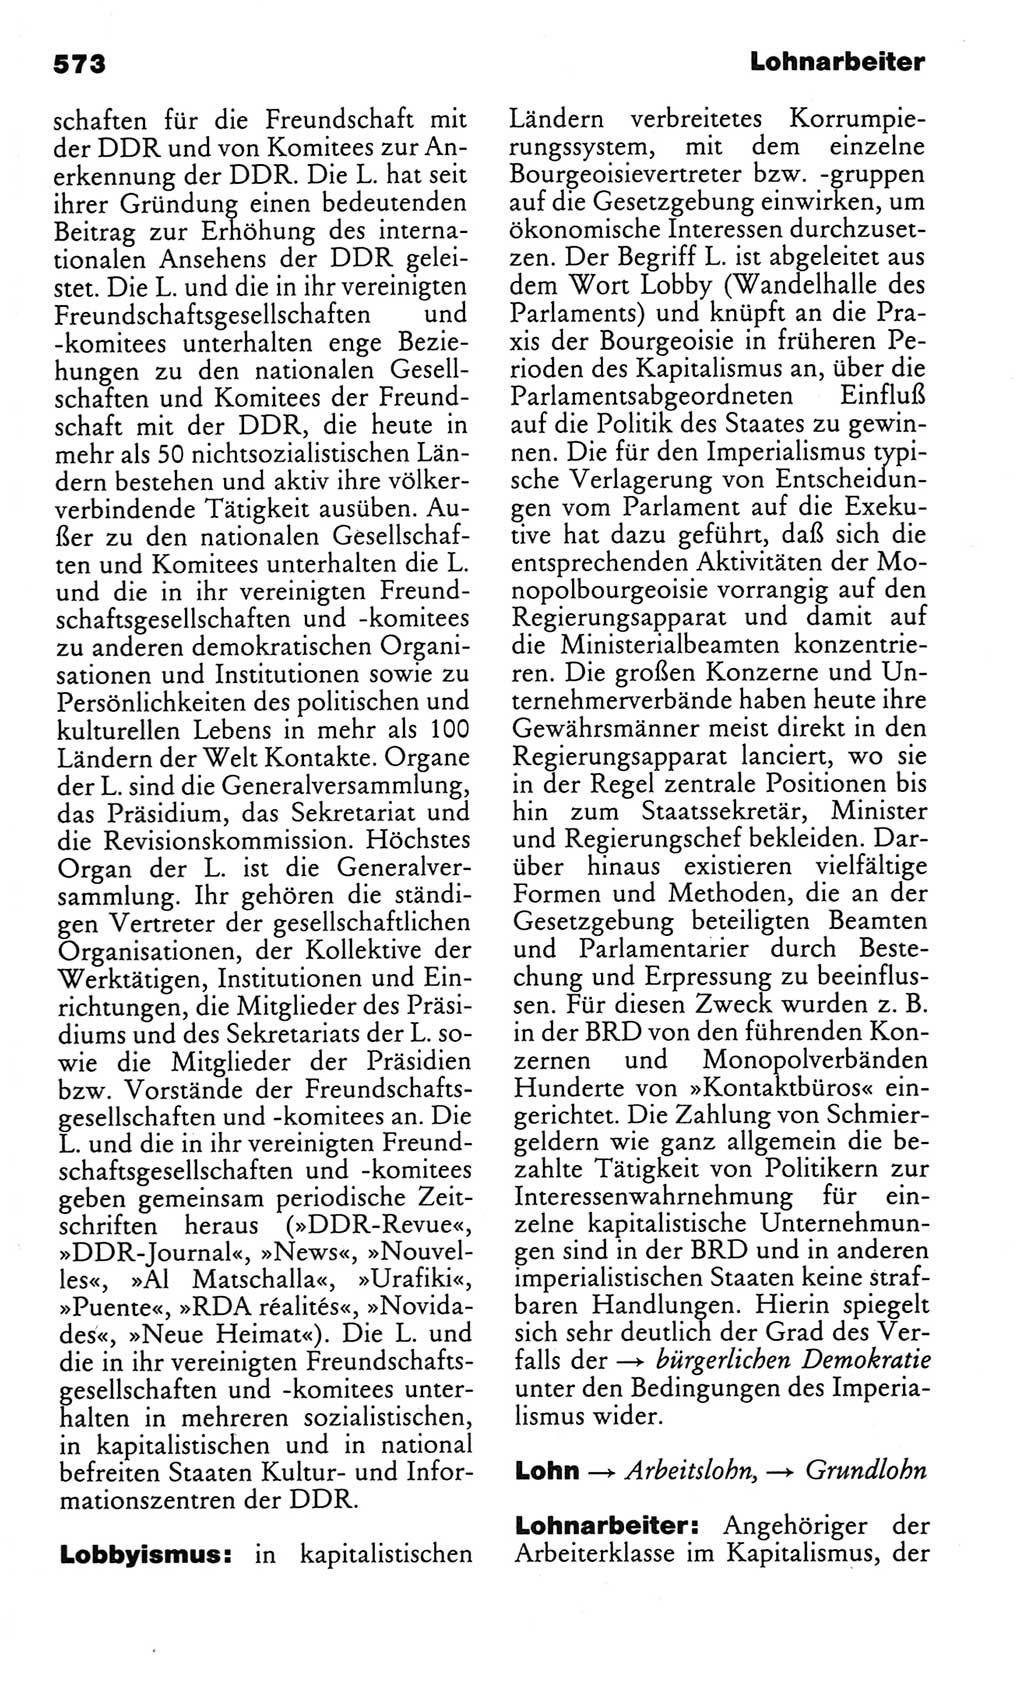 Kleines politisches Wörterbuch [Deutsche Demokratische Republik (DDR)] 1983, Seite 573 (Kl. pol. Wb. DDR 1983, S. 573)